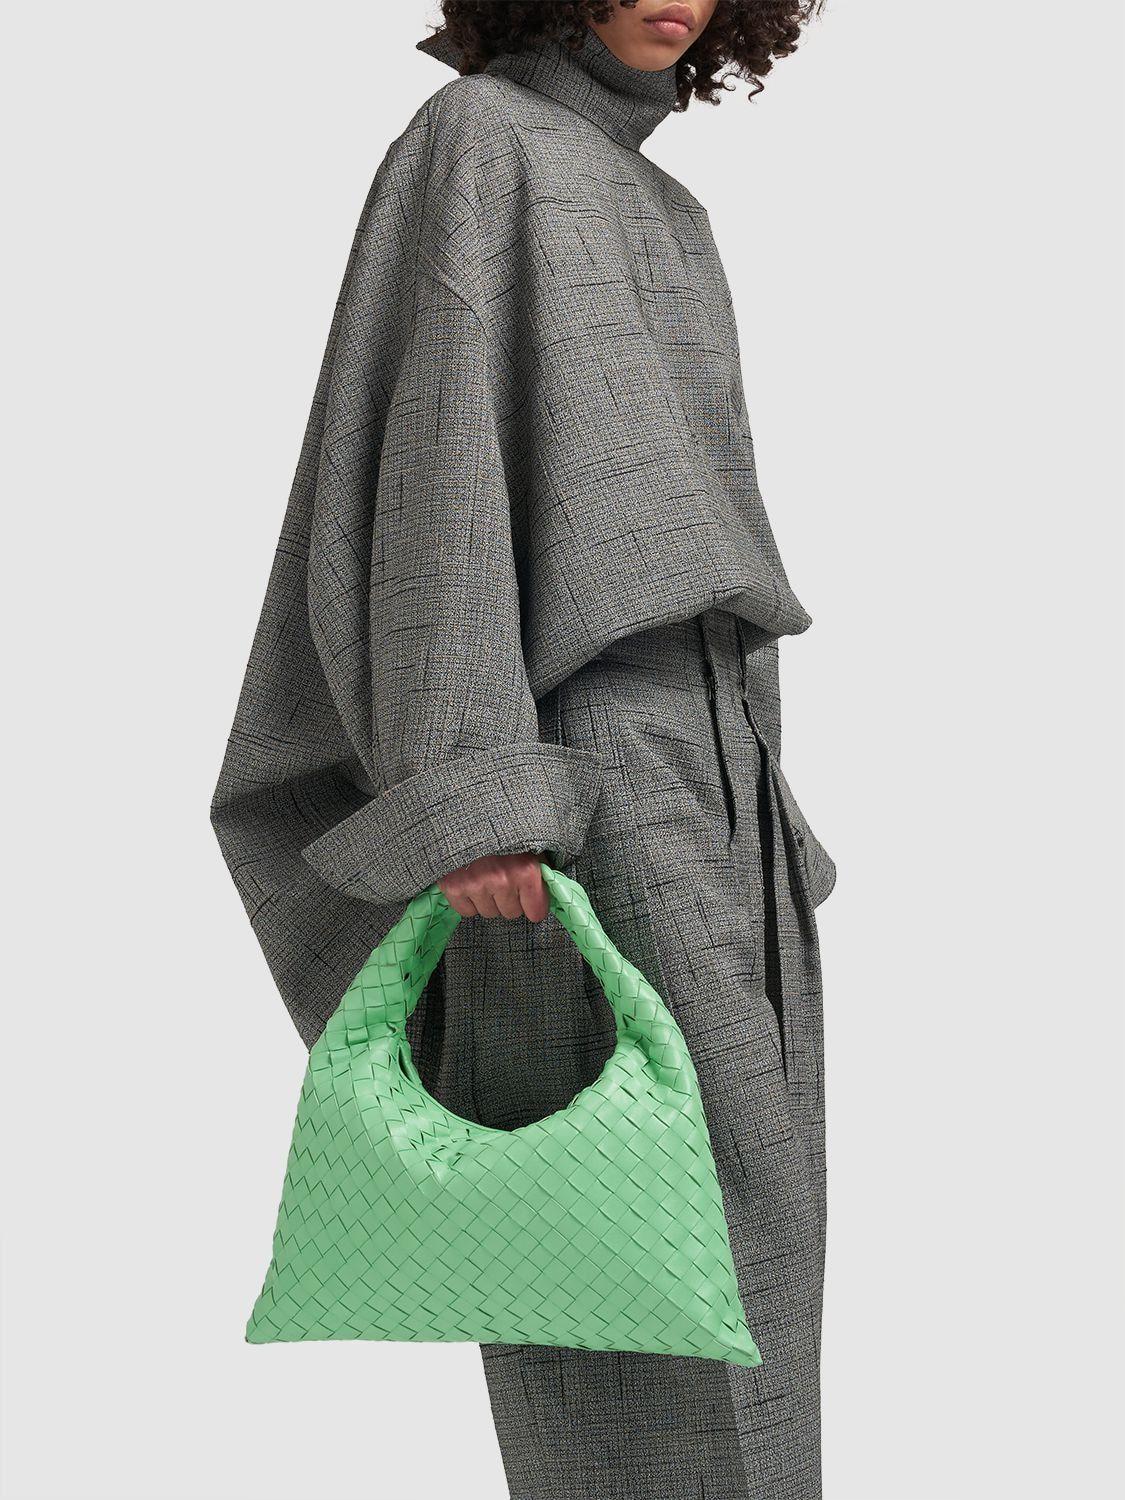 Bottega Veneta Small Hop Hobo Bag in Green